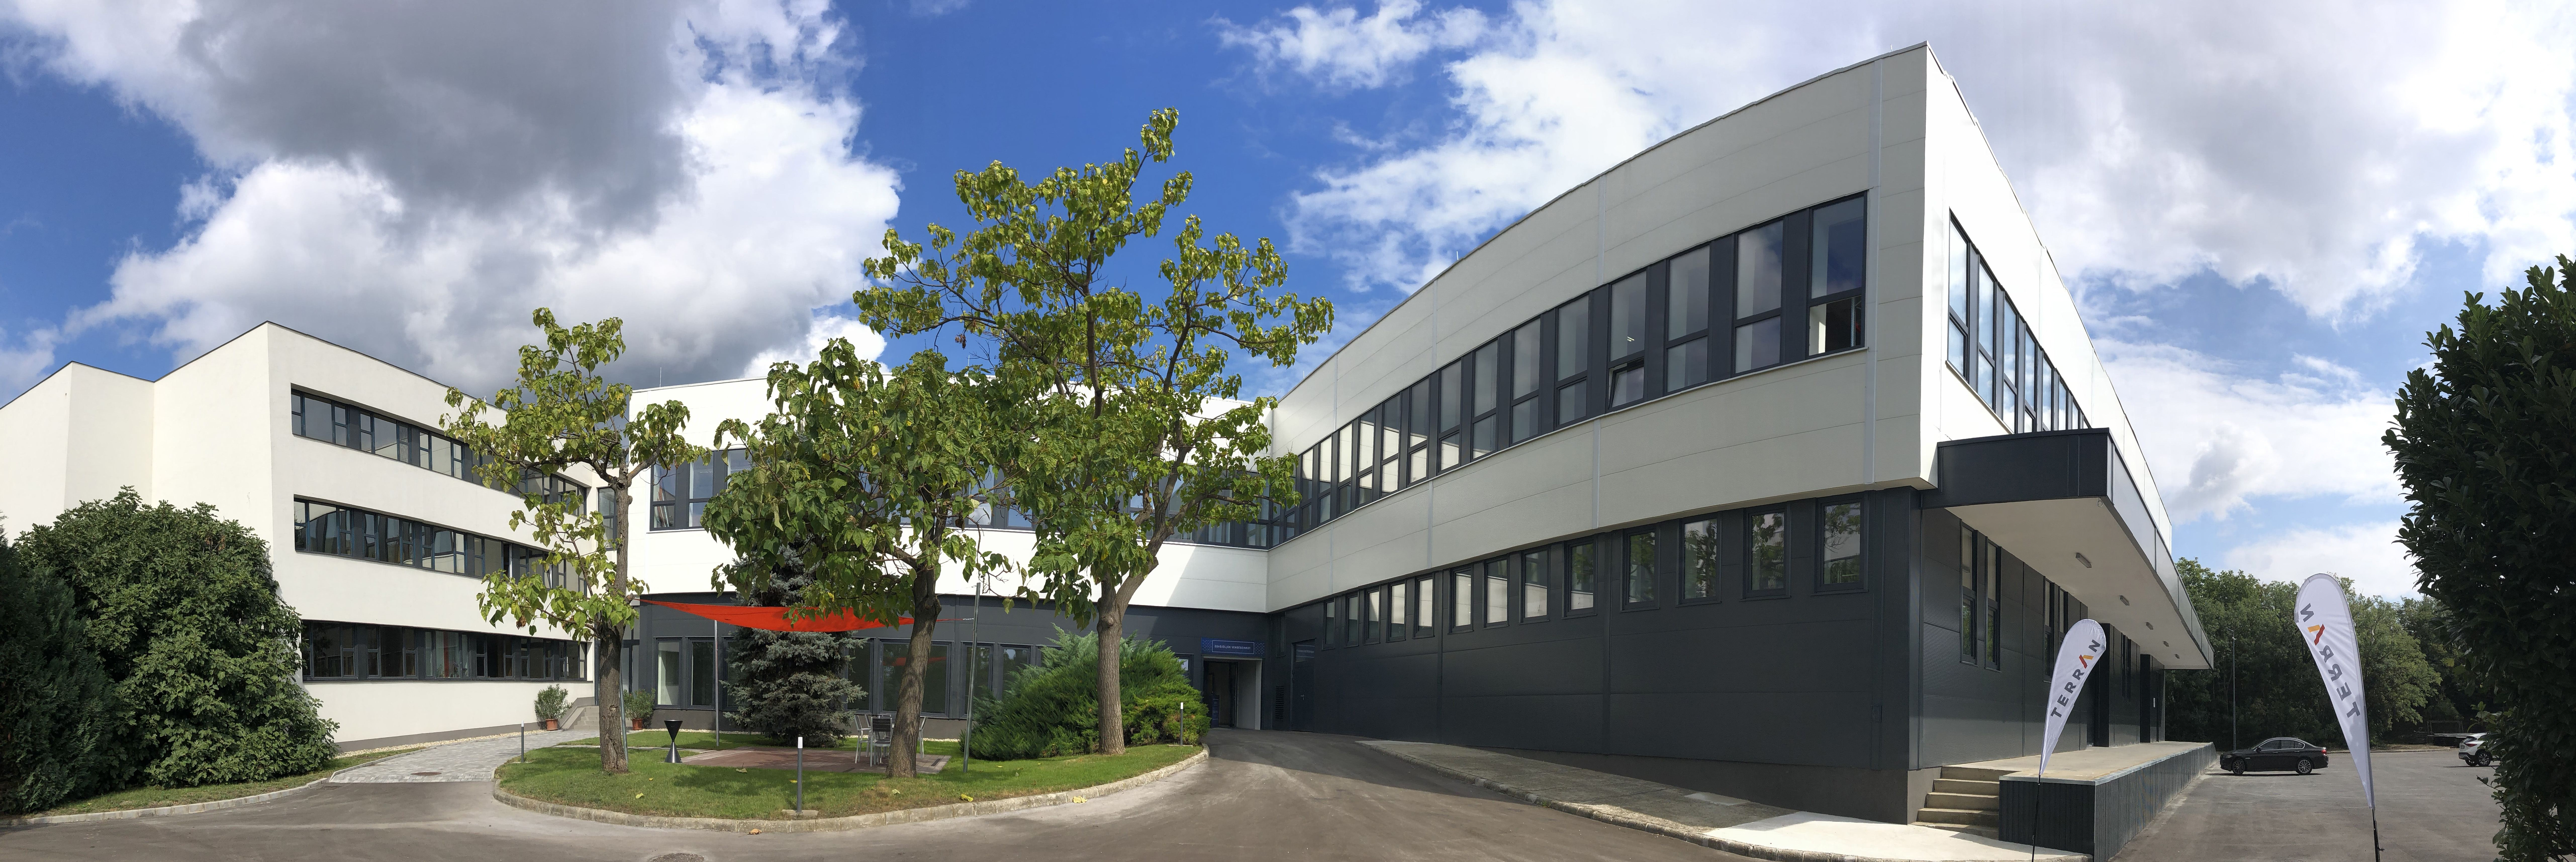 Am deschis prima fabrică de țigle fotovoltaice la Pécs. Vânzările în România încep din 2022